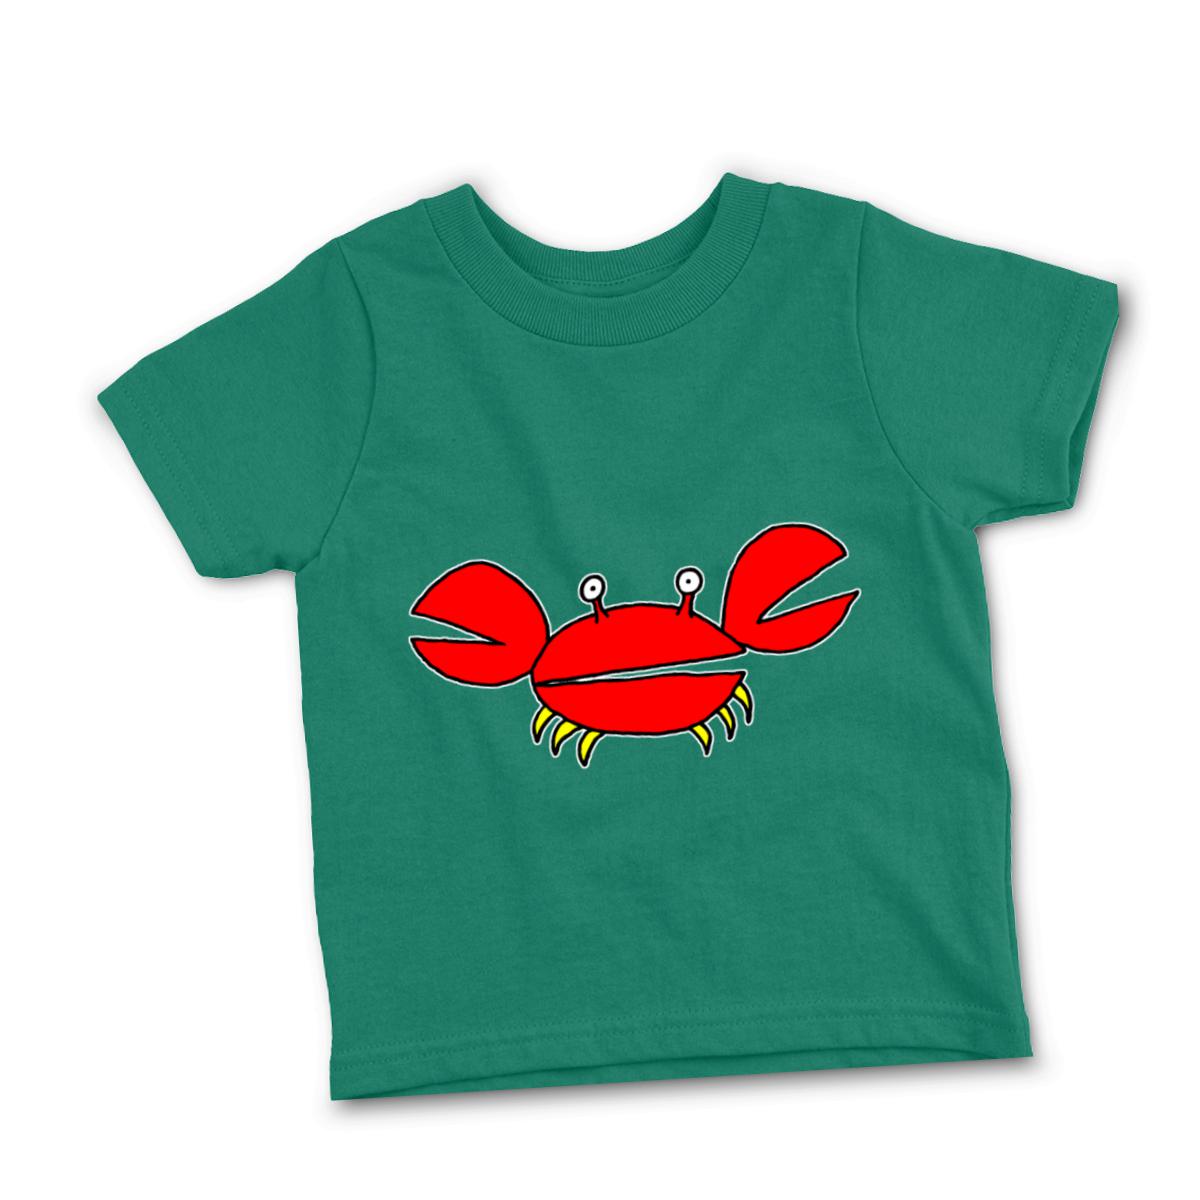 Crab Toddler Tee 2T kelly